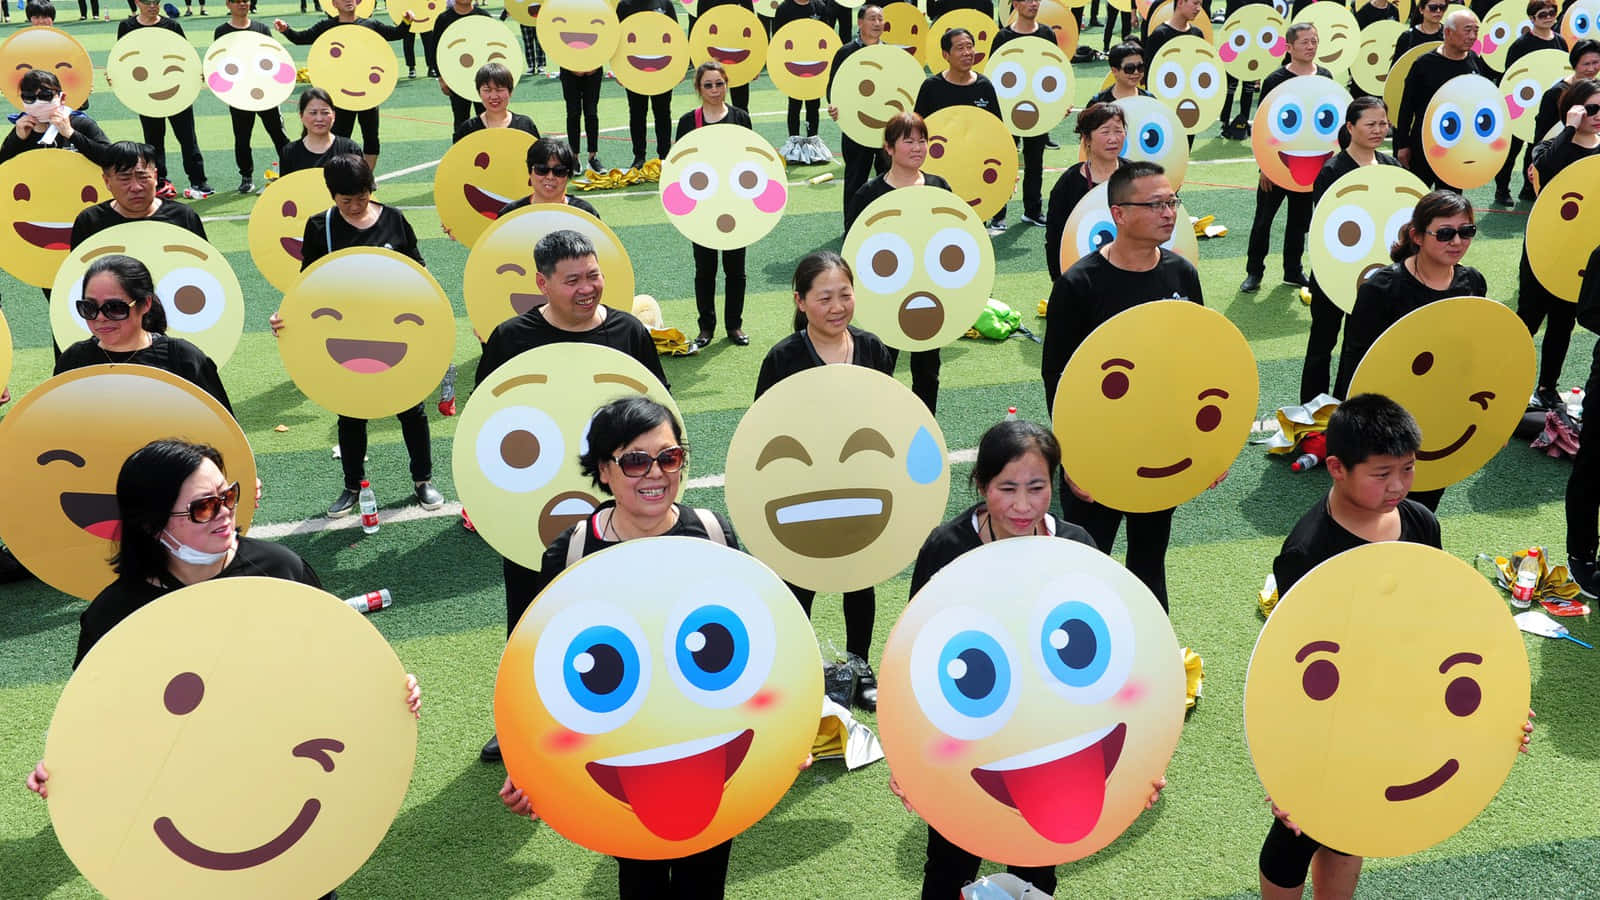 Einegruppe Von Menschen Hält Emojis In Die Höhe.